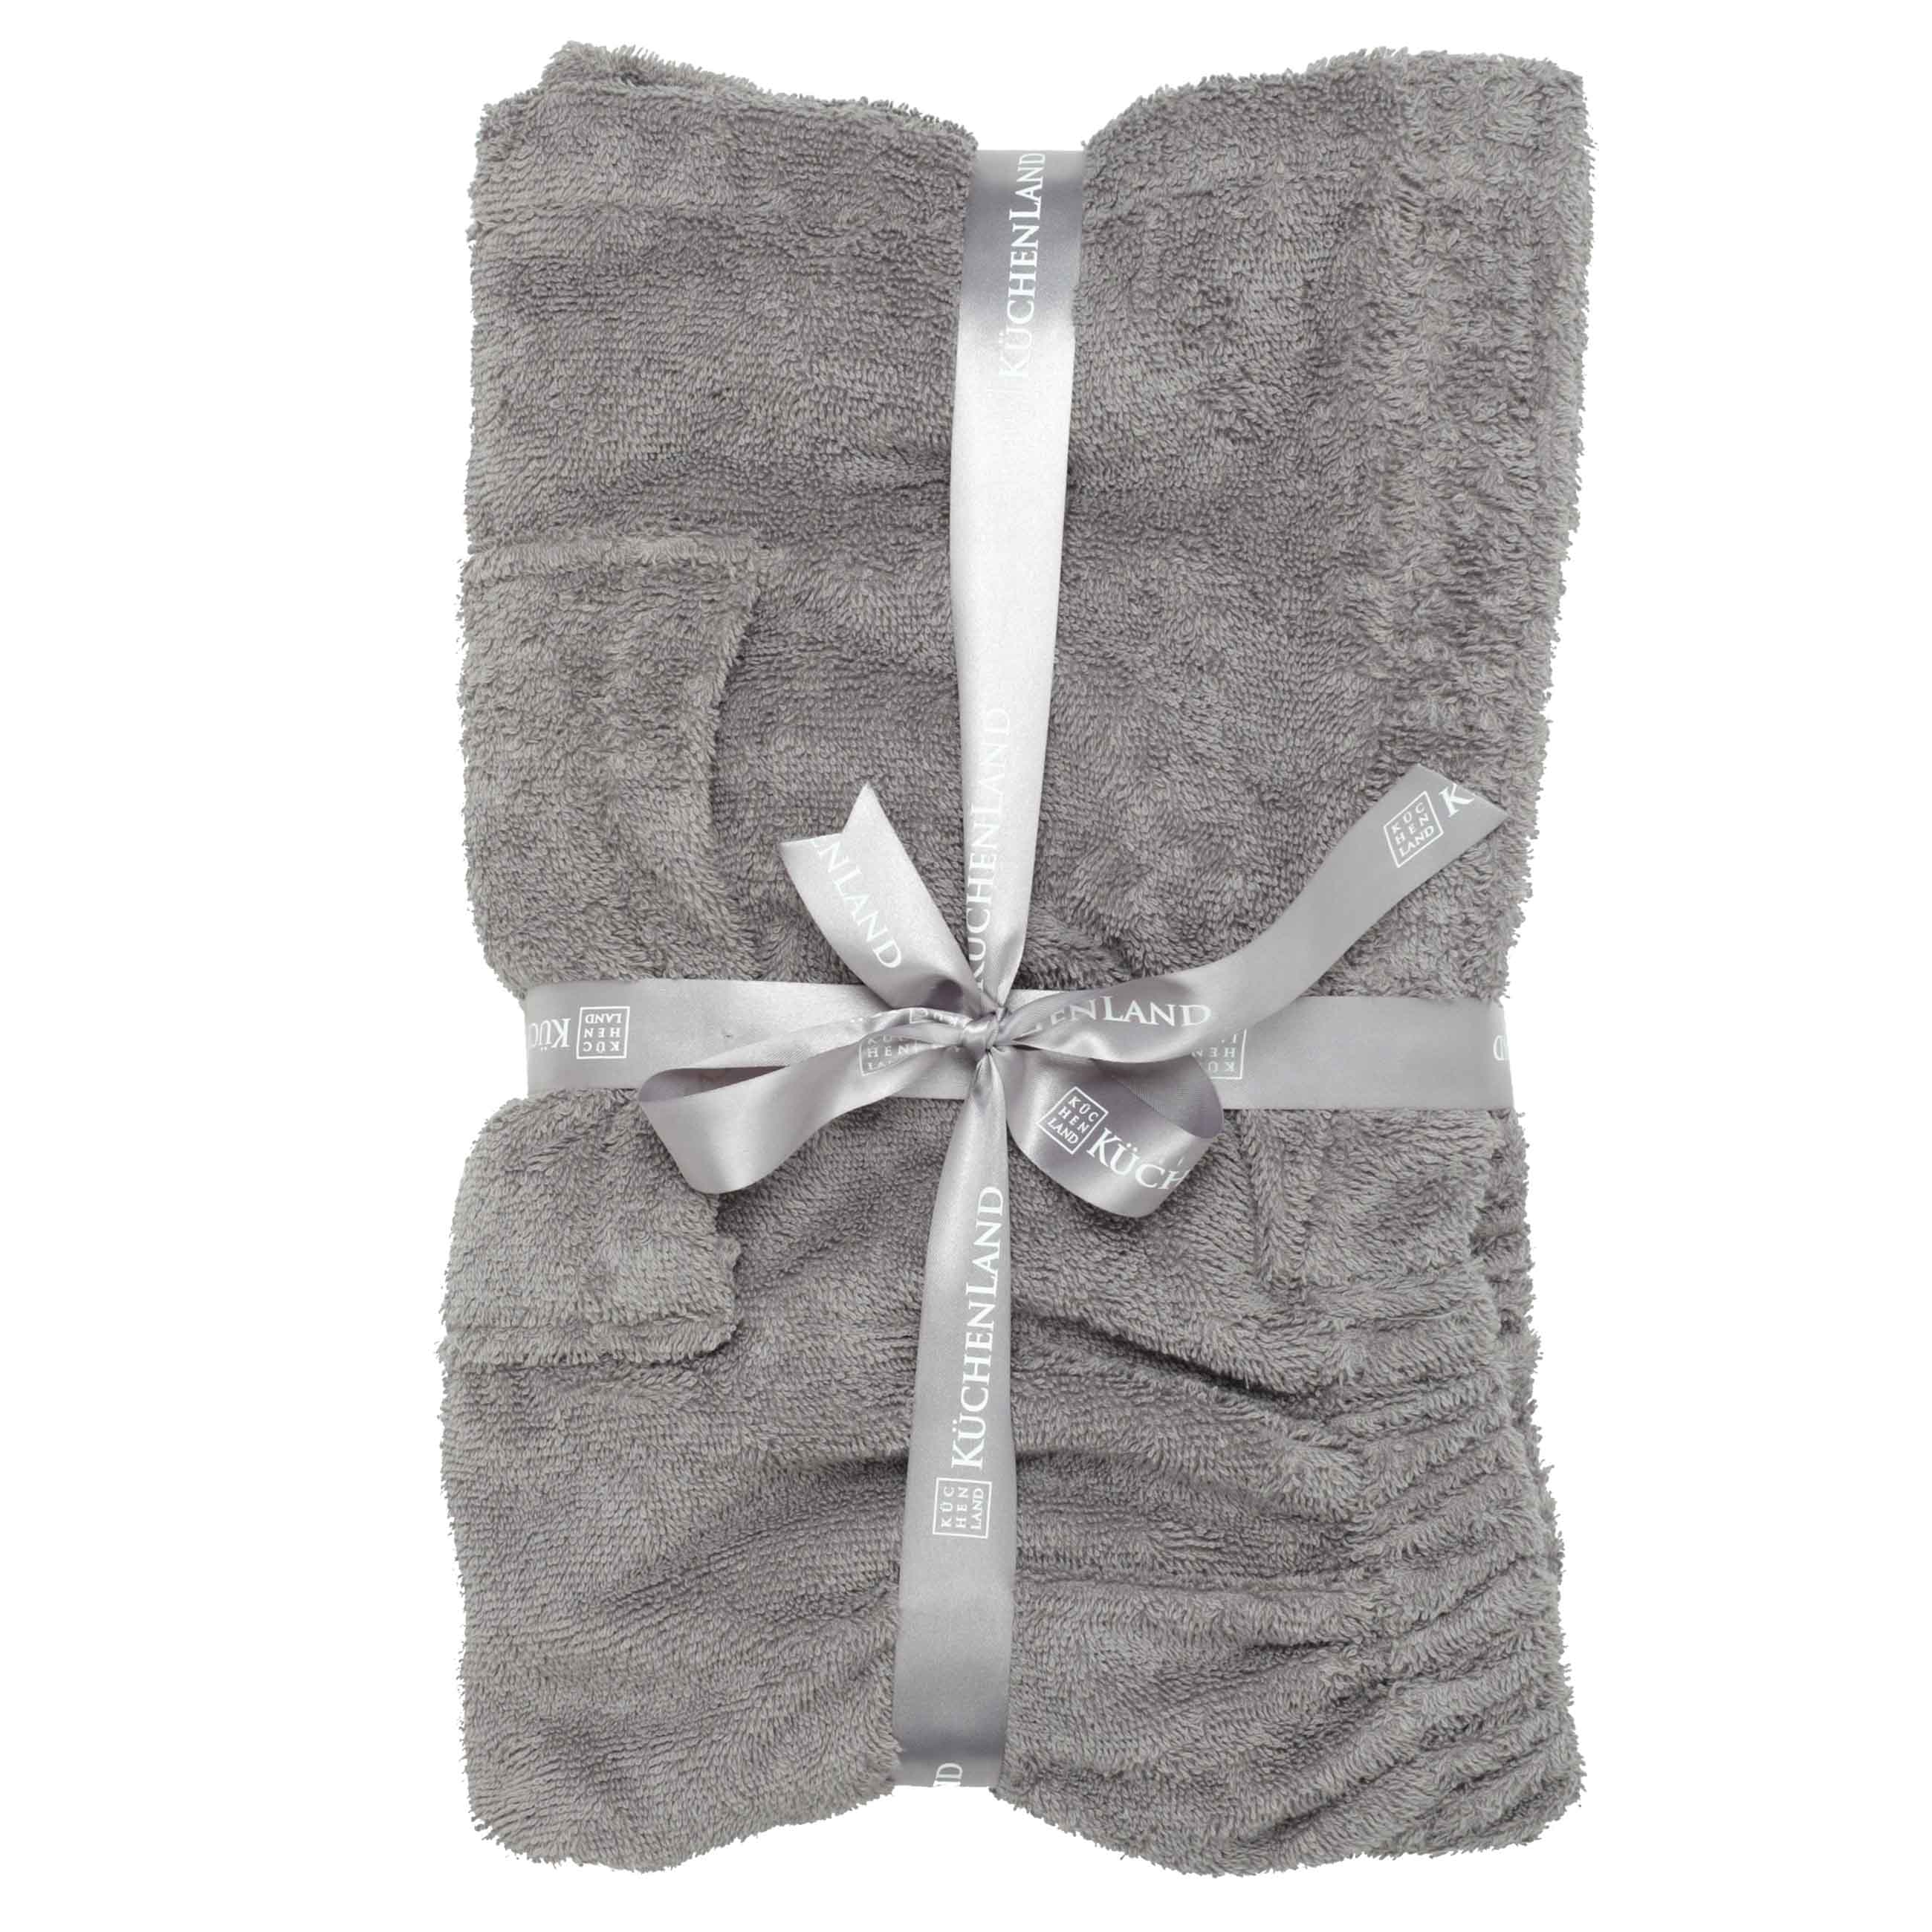 Полотенце-килт мужское, 70х160 см, на липучке, хлопок, темно-серое, Spa towel изображение № 5